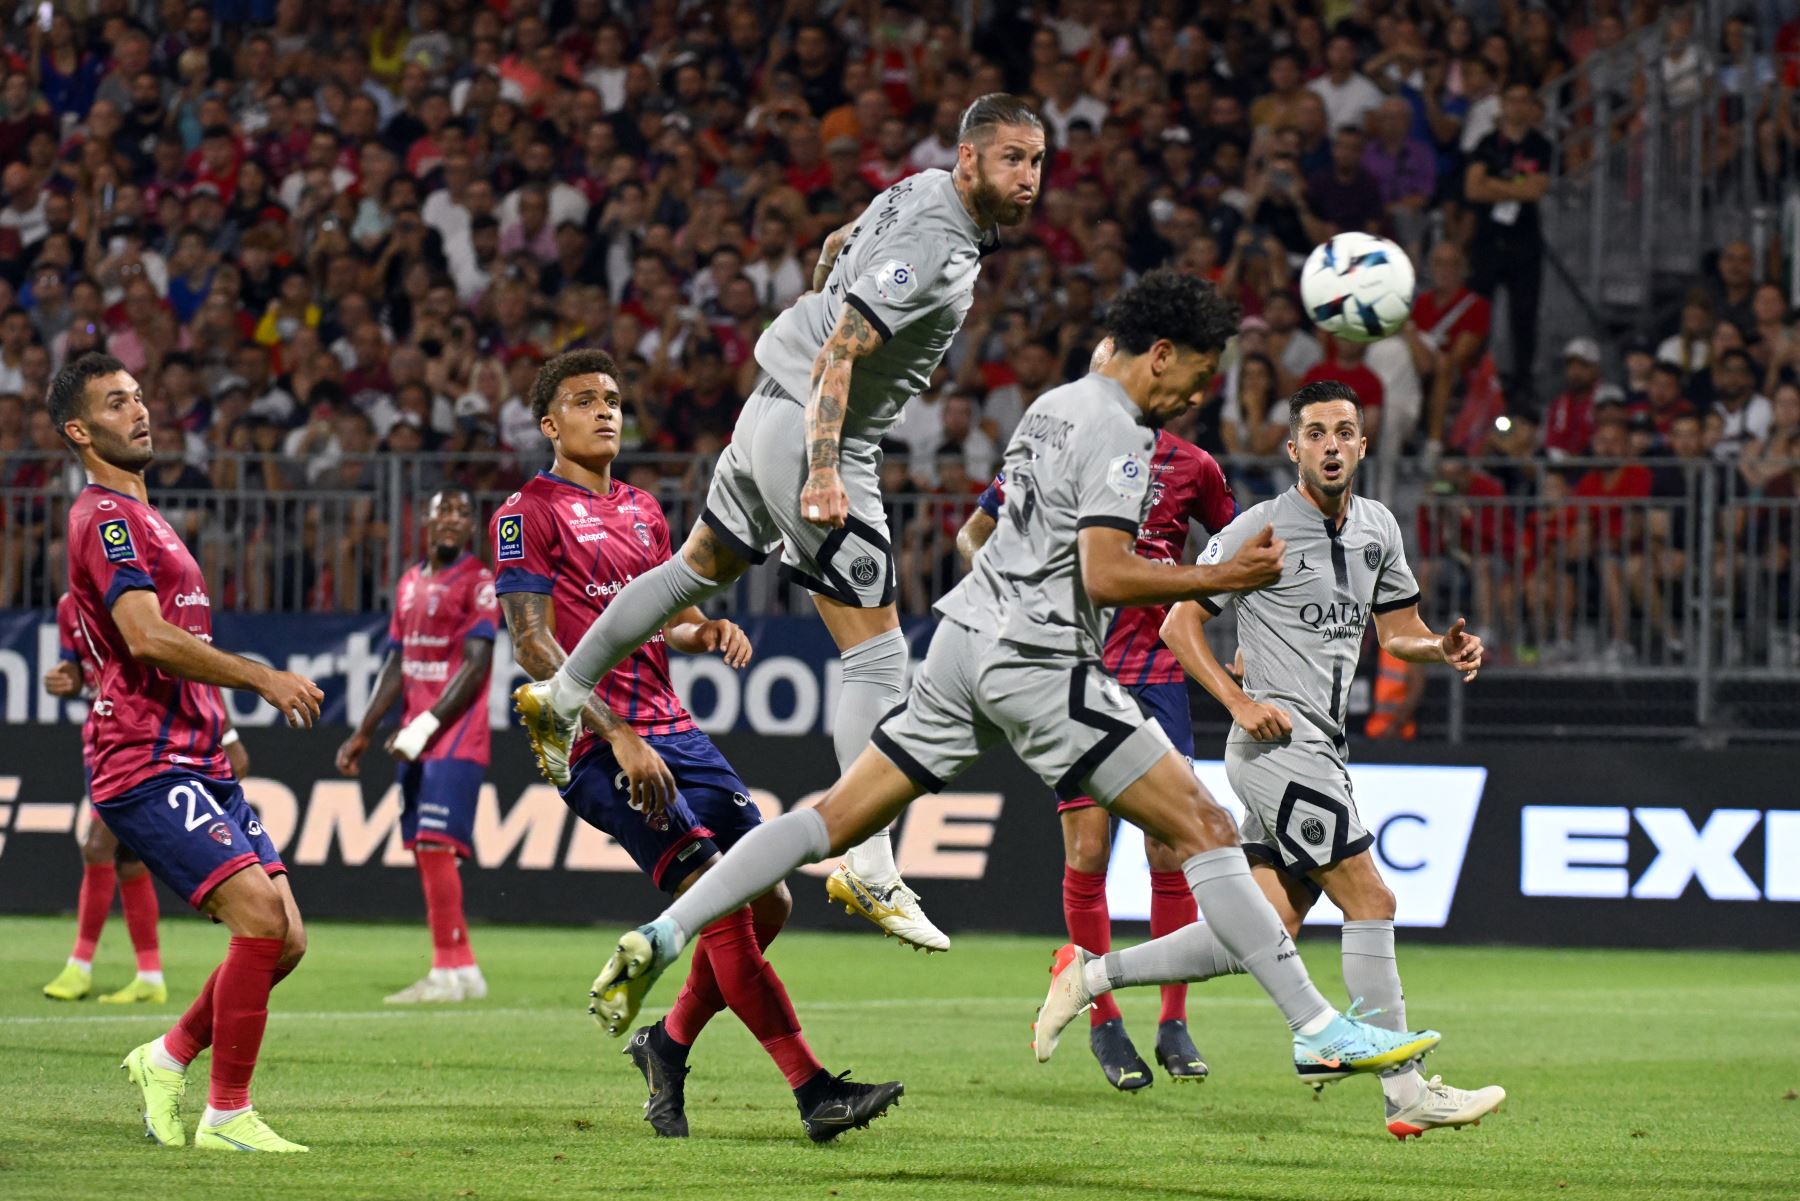 El defensor brasileño de Paris Saint-Germain, Marquinhos, cabecea el balón para marcar un gol durante el partido de la liga francesa. Foto: AFP